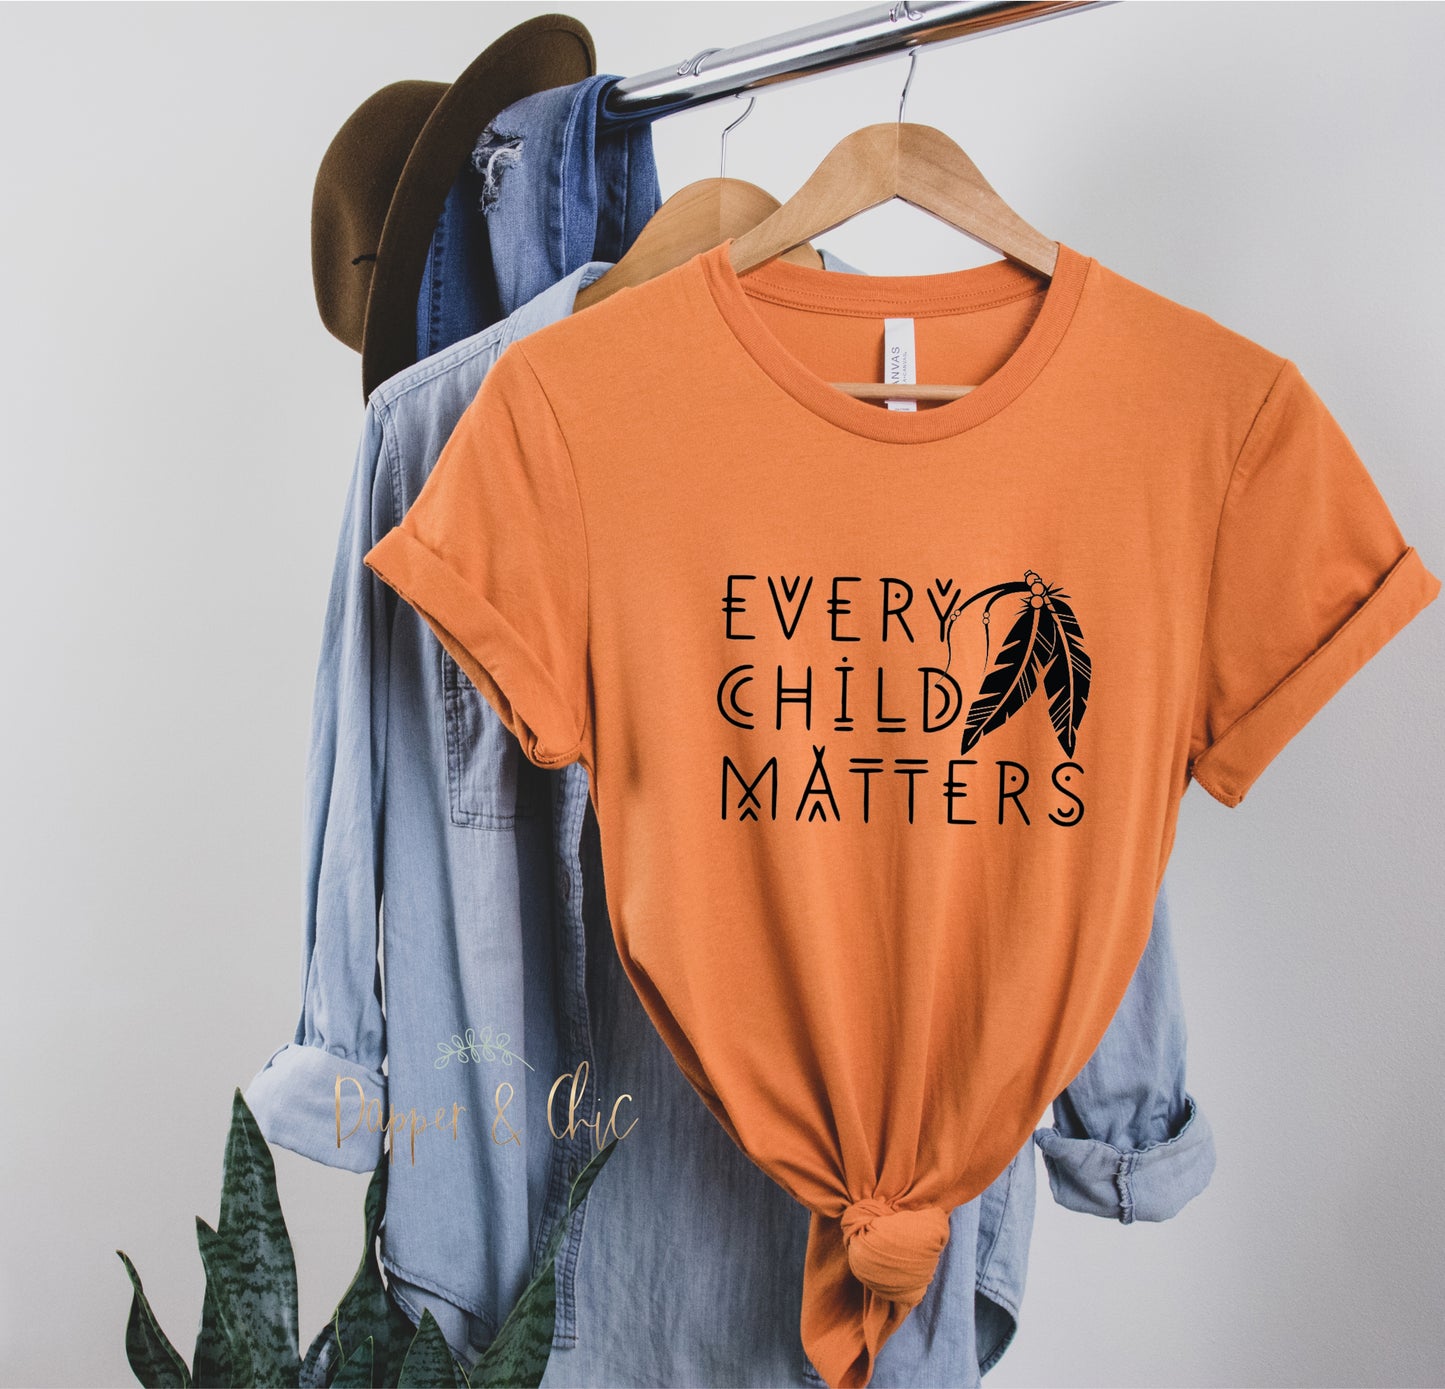 Every Child Matters- Orange Shirts